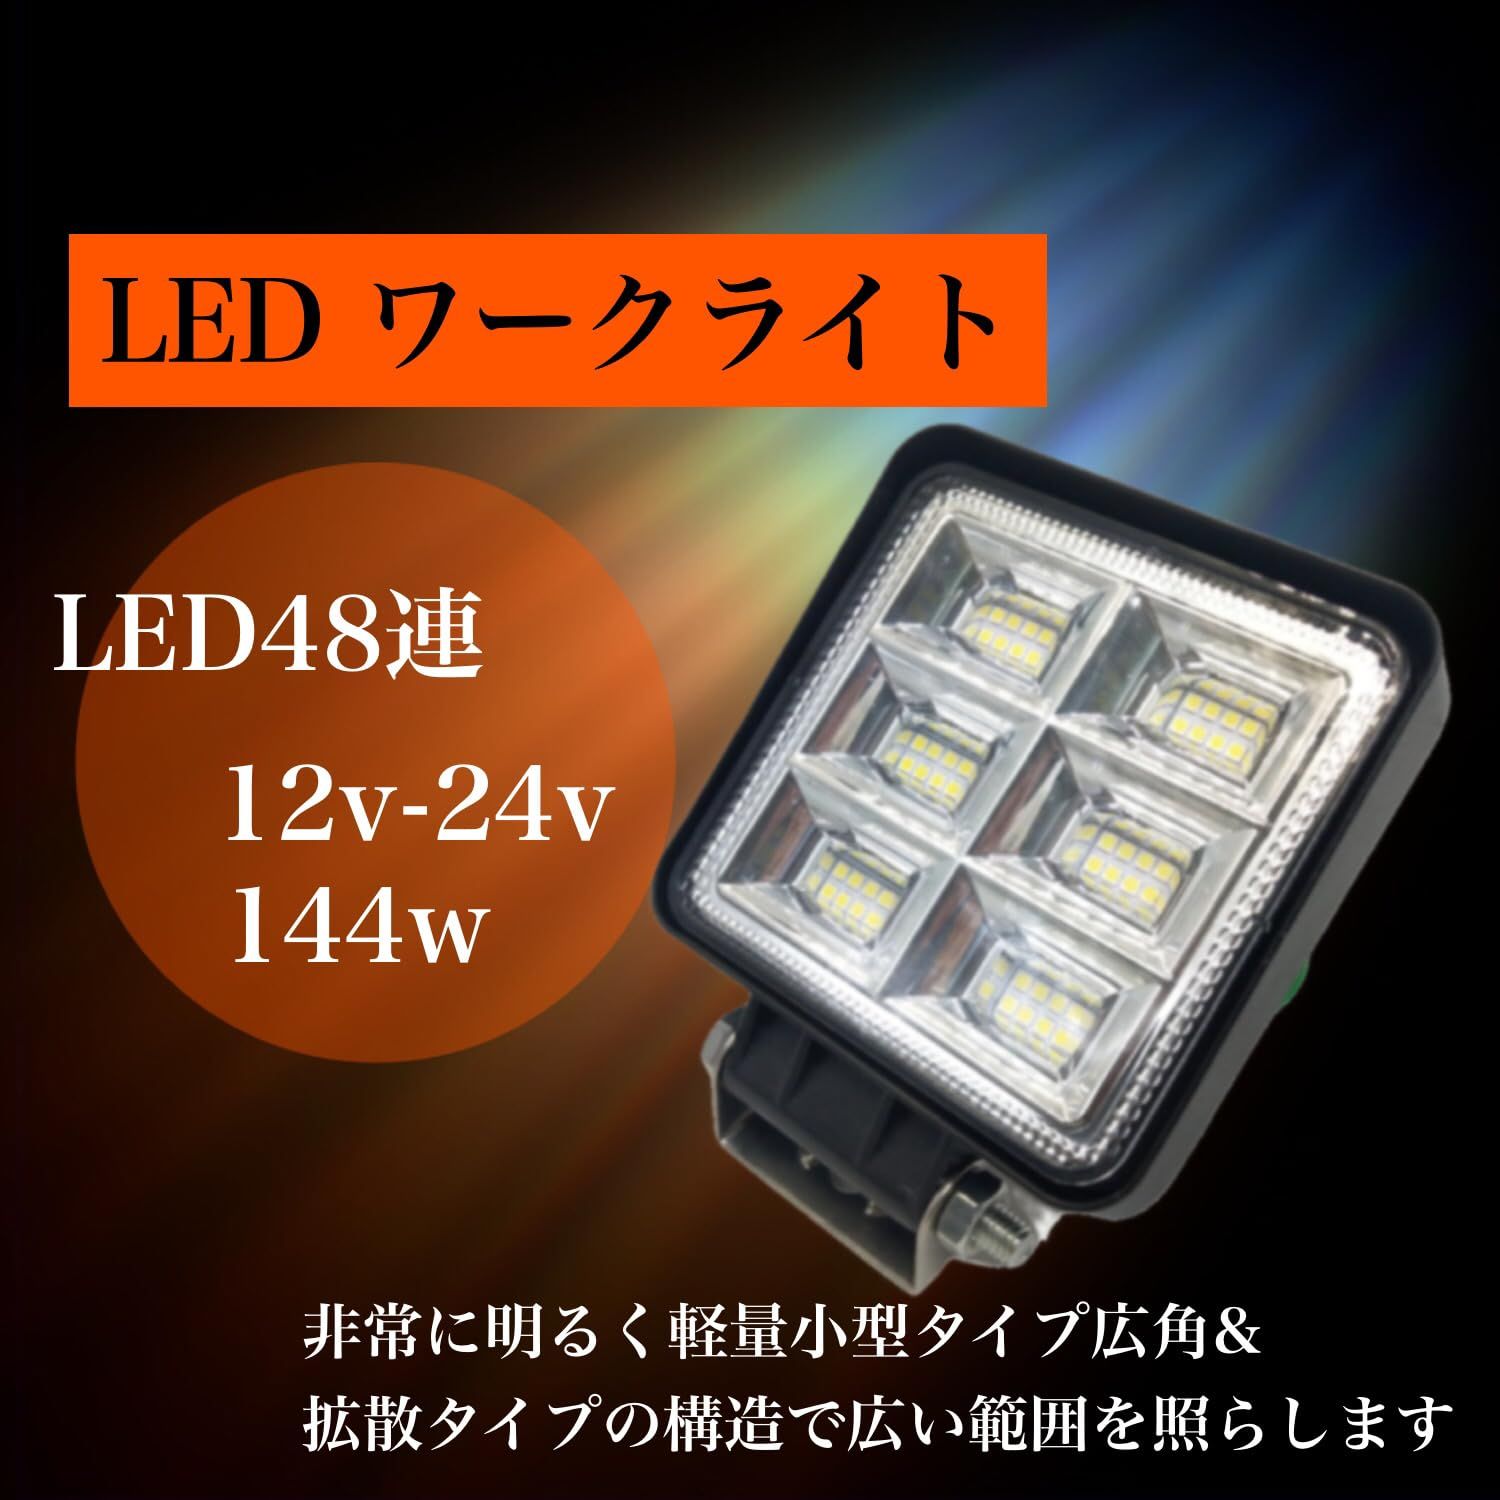 Optimister ワークライト 作業灯 led LED 作業用ライト 144w 12v-24v 路肩灯 補助灯 投光器 車外灯 バックランプ  サーチライト デイライト 角度調整 1個 [1個]